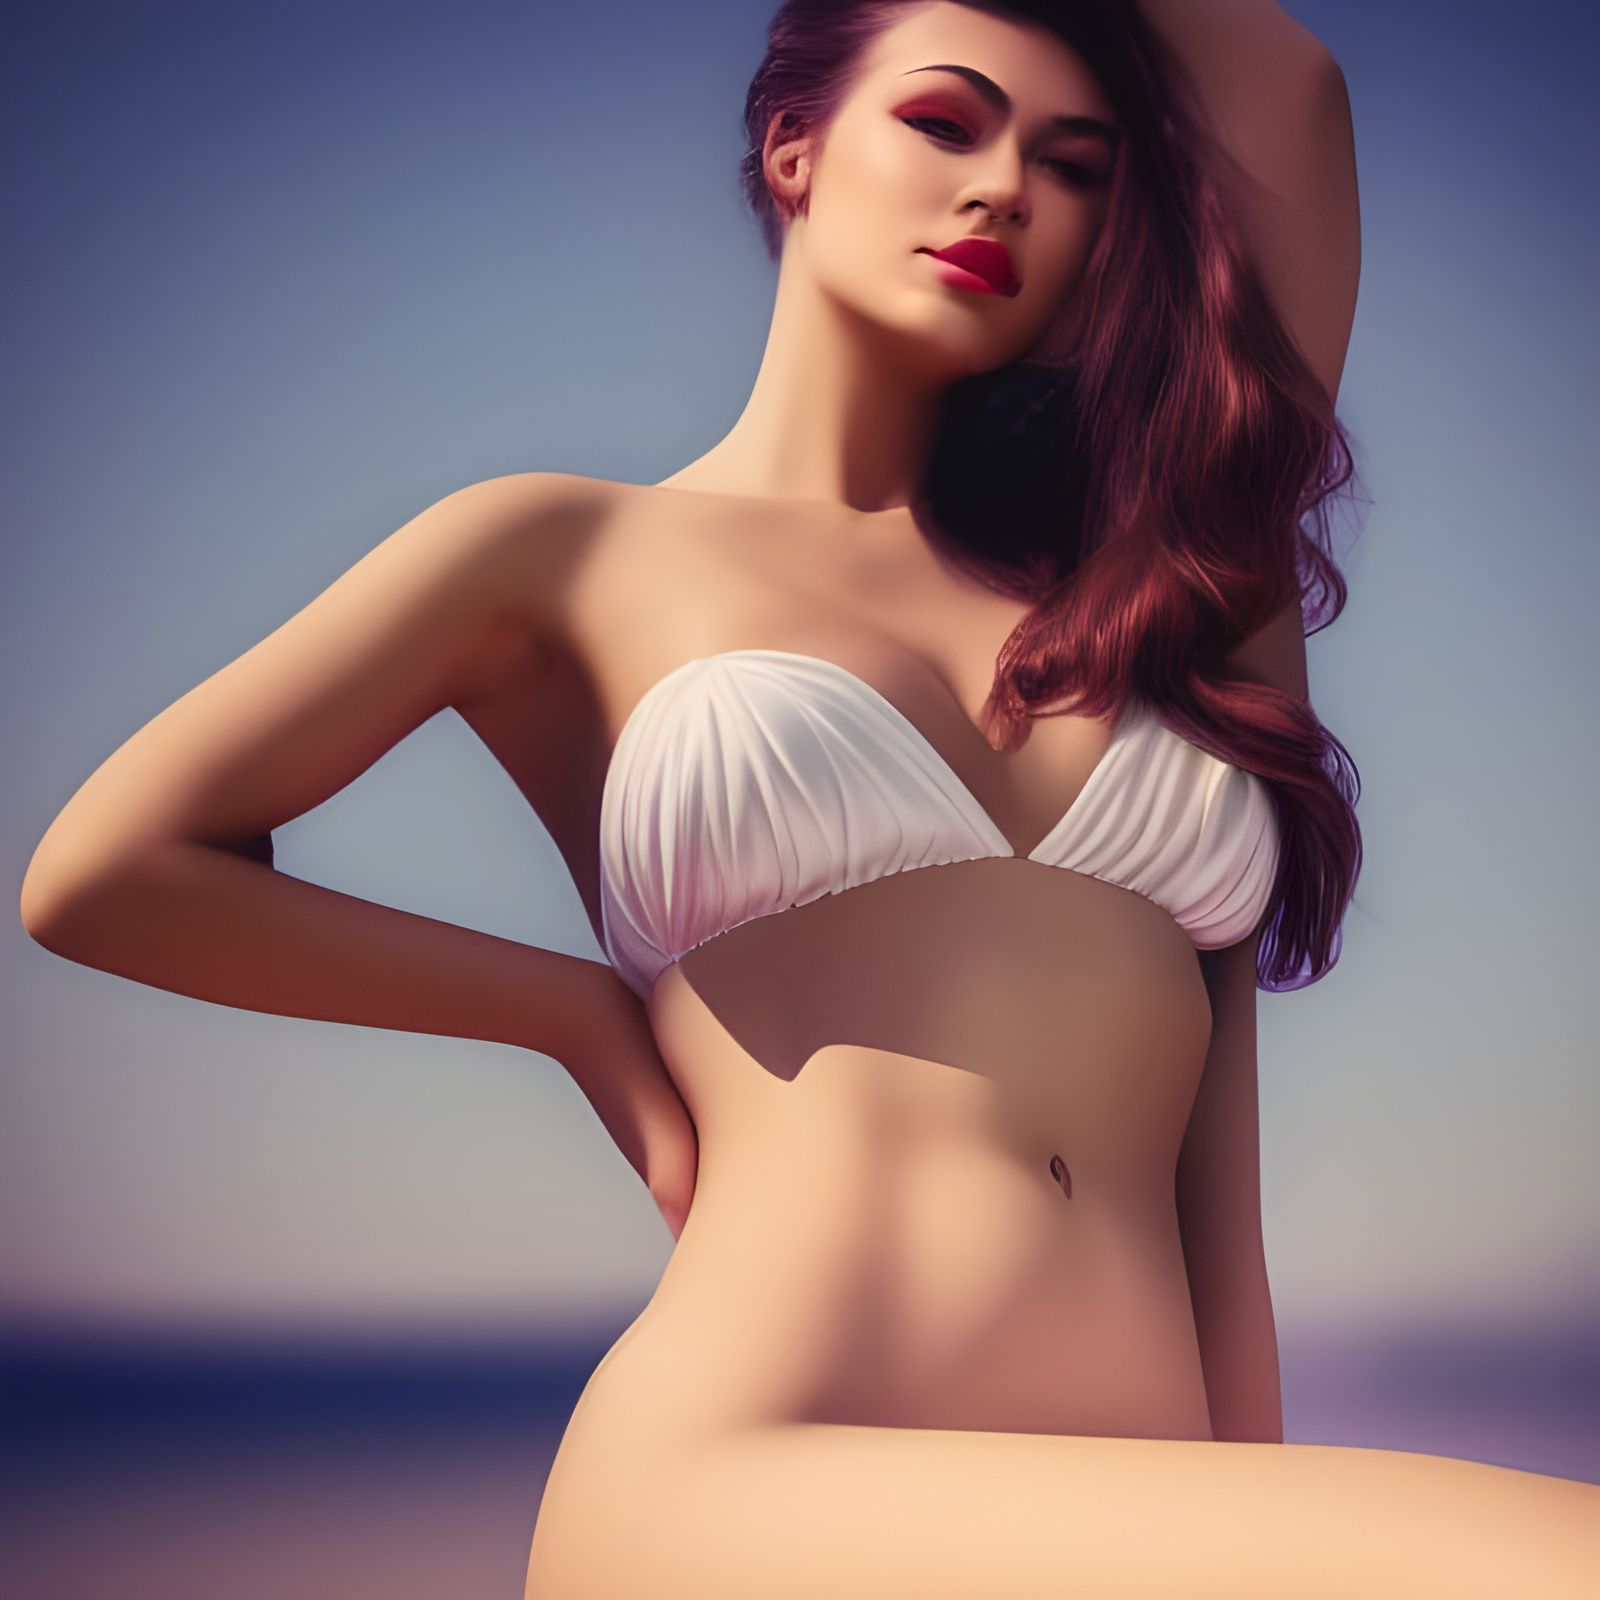 Pin up girl. Generated by AI. A beautiful woman in a bikini